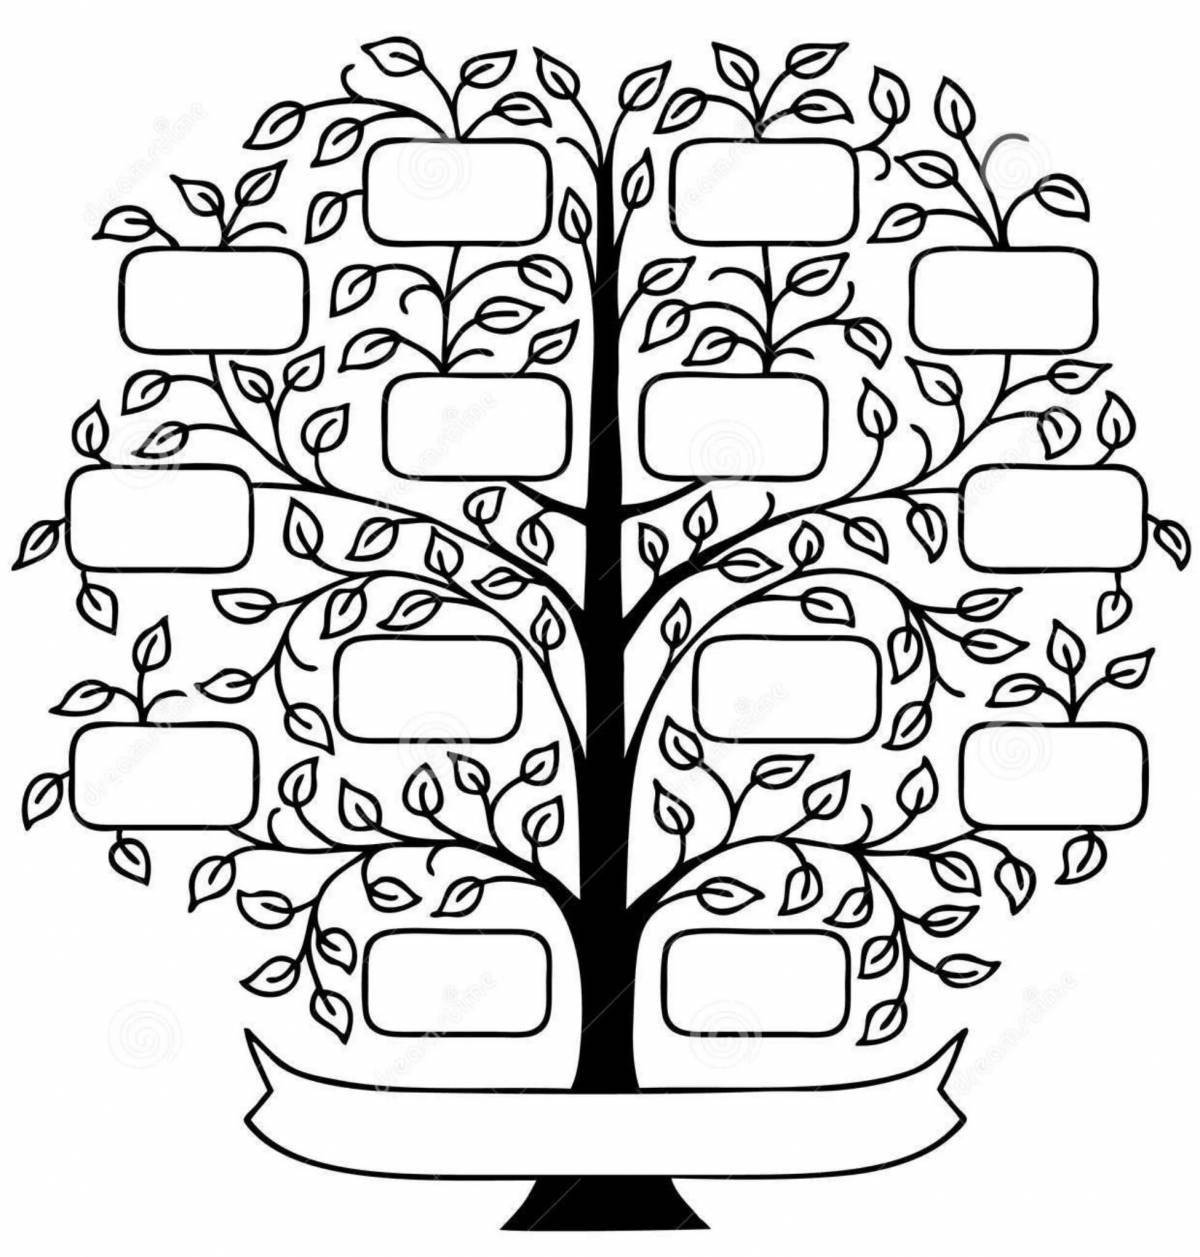 Family tree #6